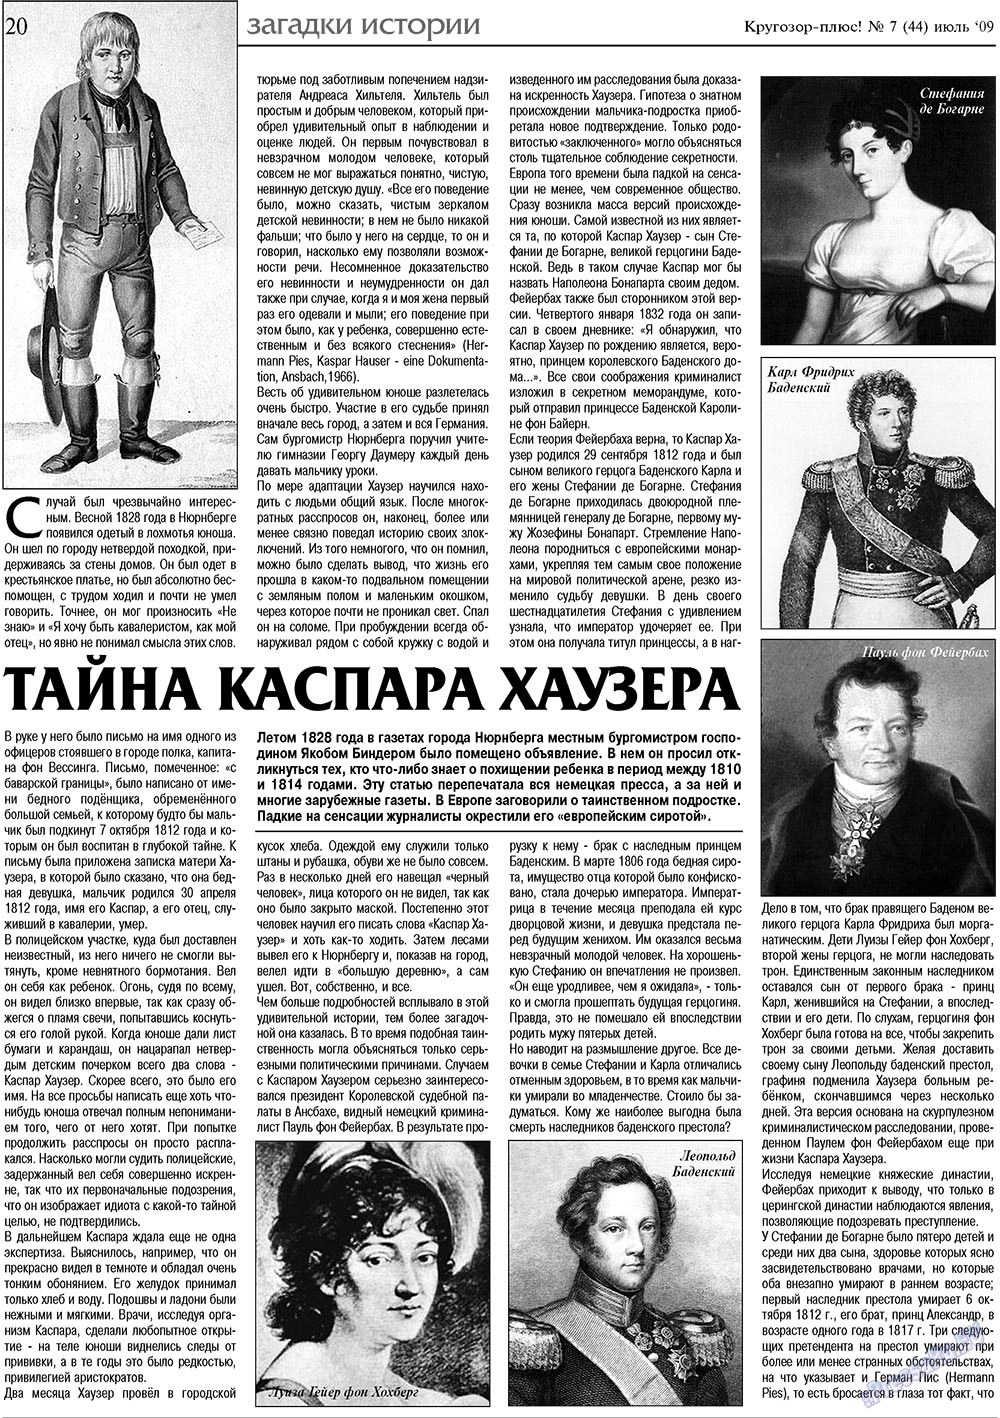 Кругозор плюс!, газета. 2009 №7 стр.20